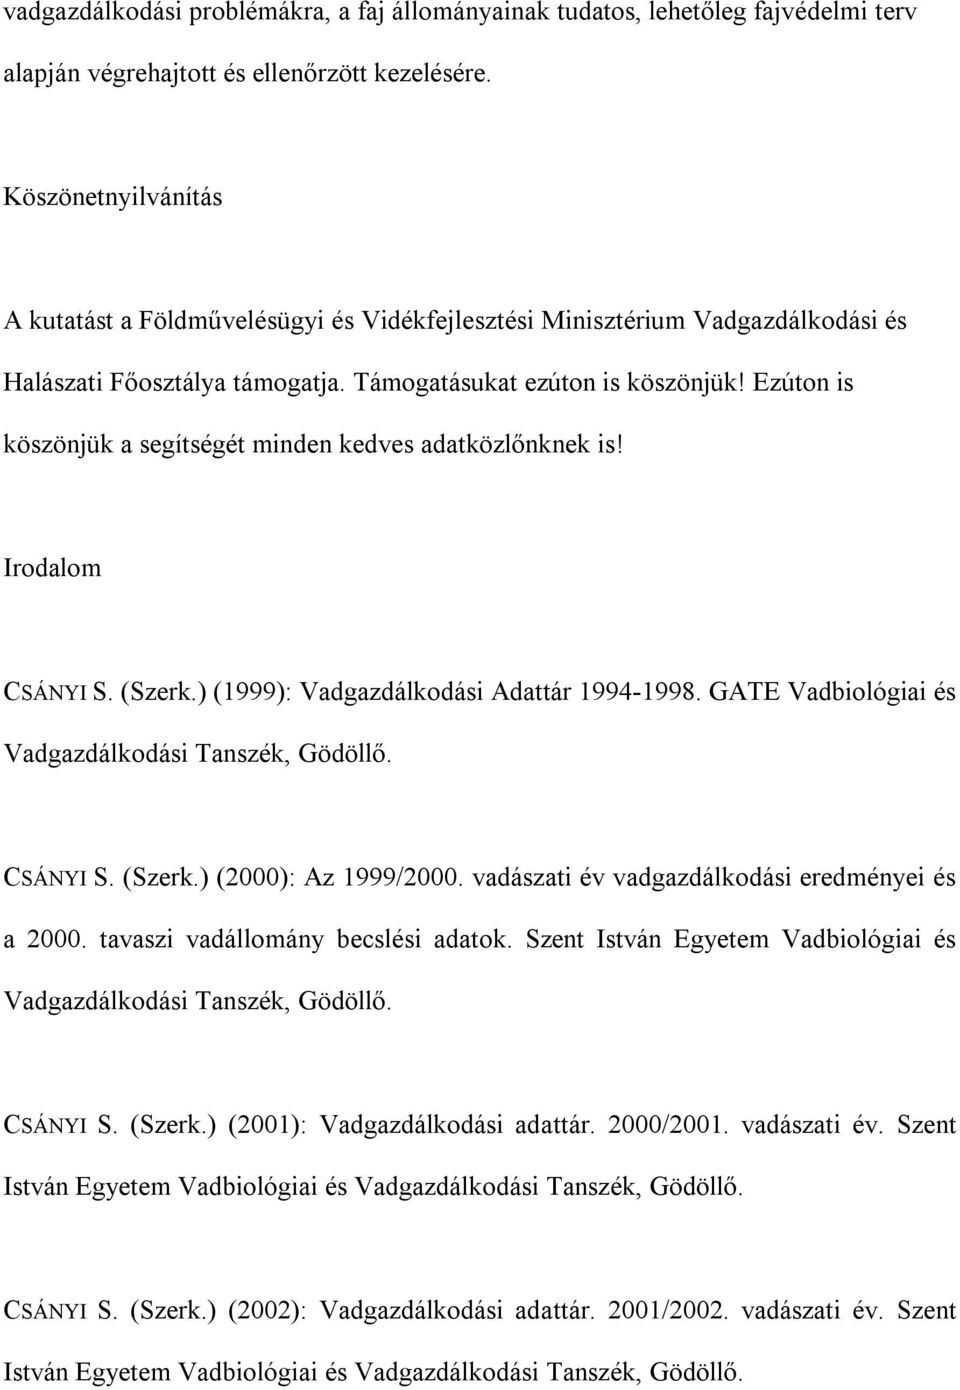 Ezúton is köszönjük a segítségét minden kedves adatközlőnknek is! Irodalom CSÁNYI S. (Szerk.) (1999): Vadgazdálkodási Adattár 1994-1998. GATE Vadbiológiai és Vadgazdálkodási Tanszék, Gödöllő.